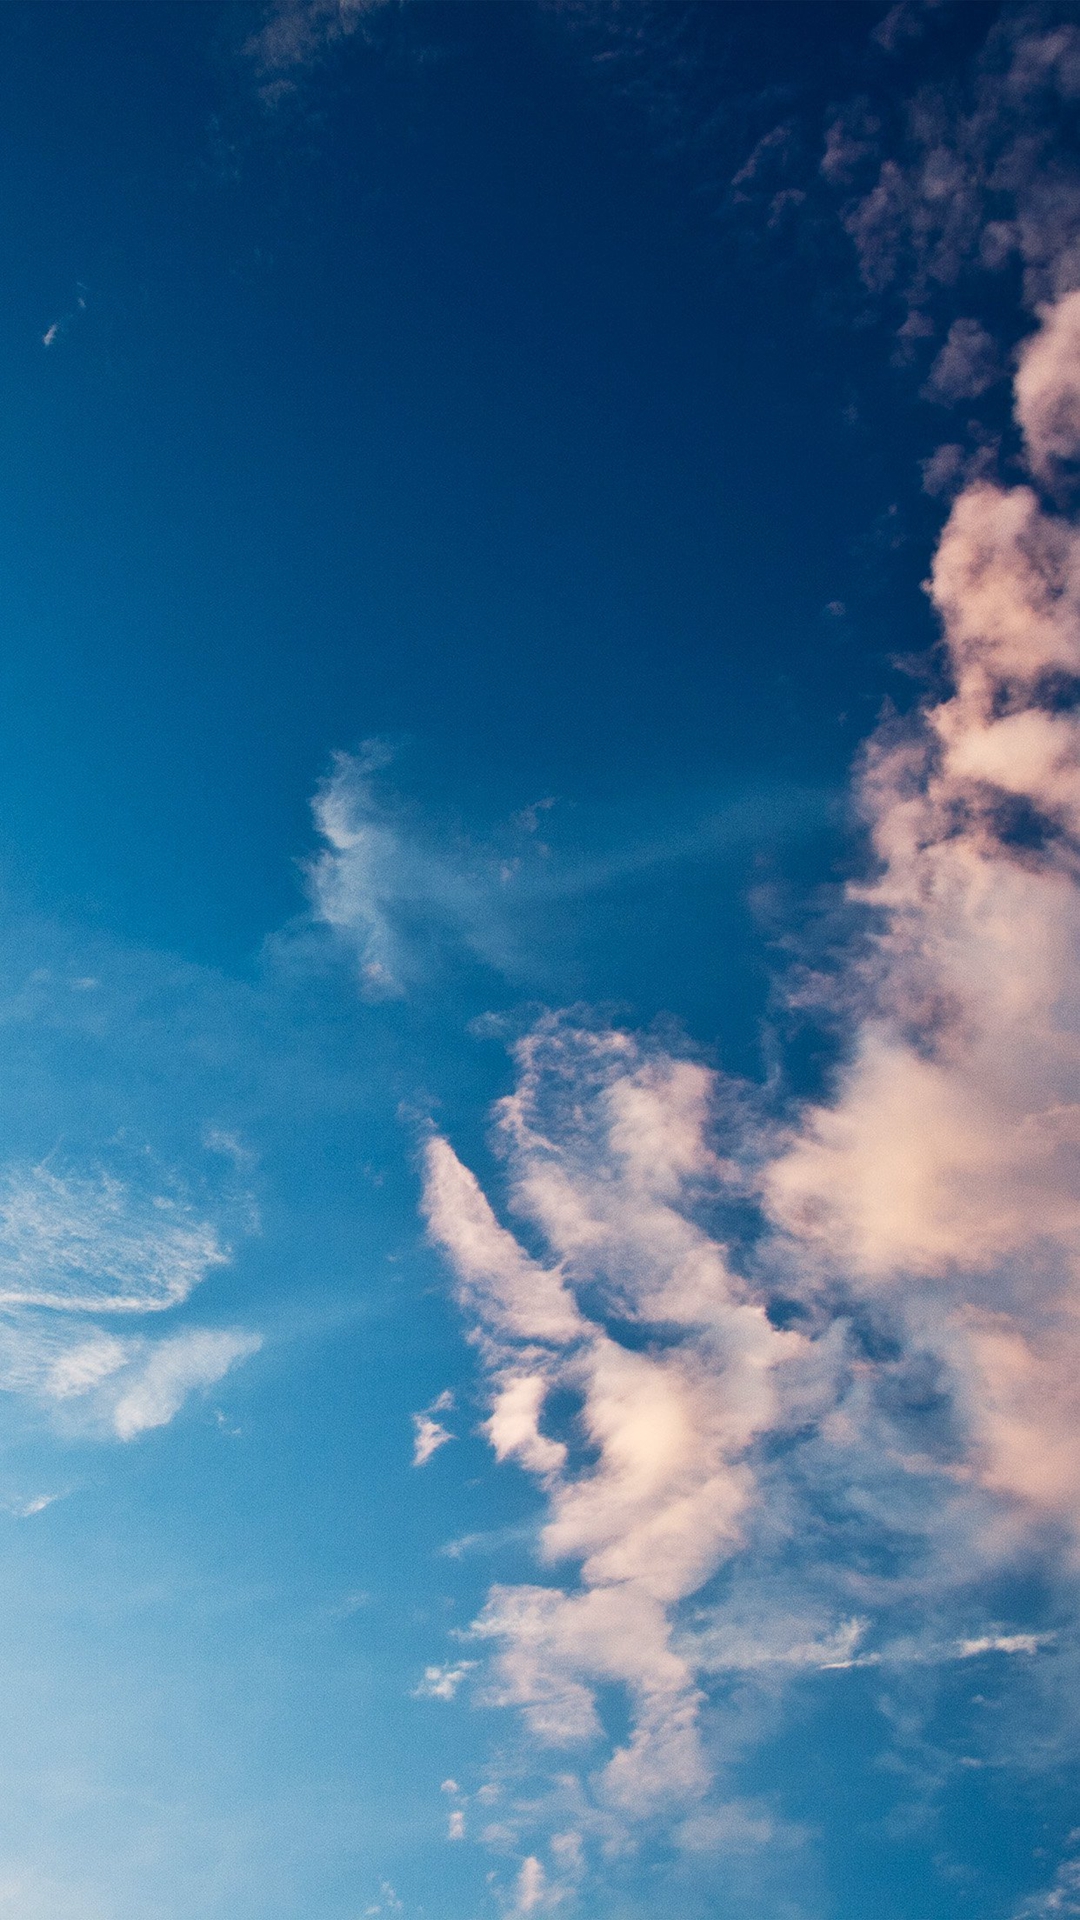 sky wallpaper iphone,sky,cloud,blue,daytime,atmosphere